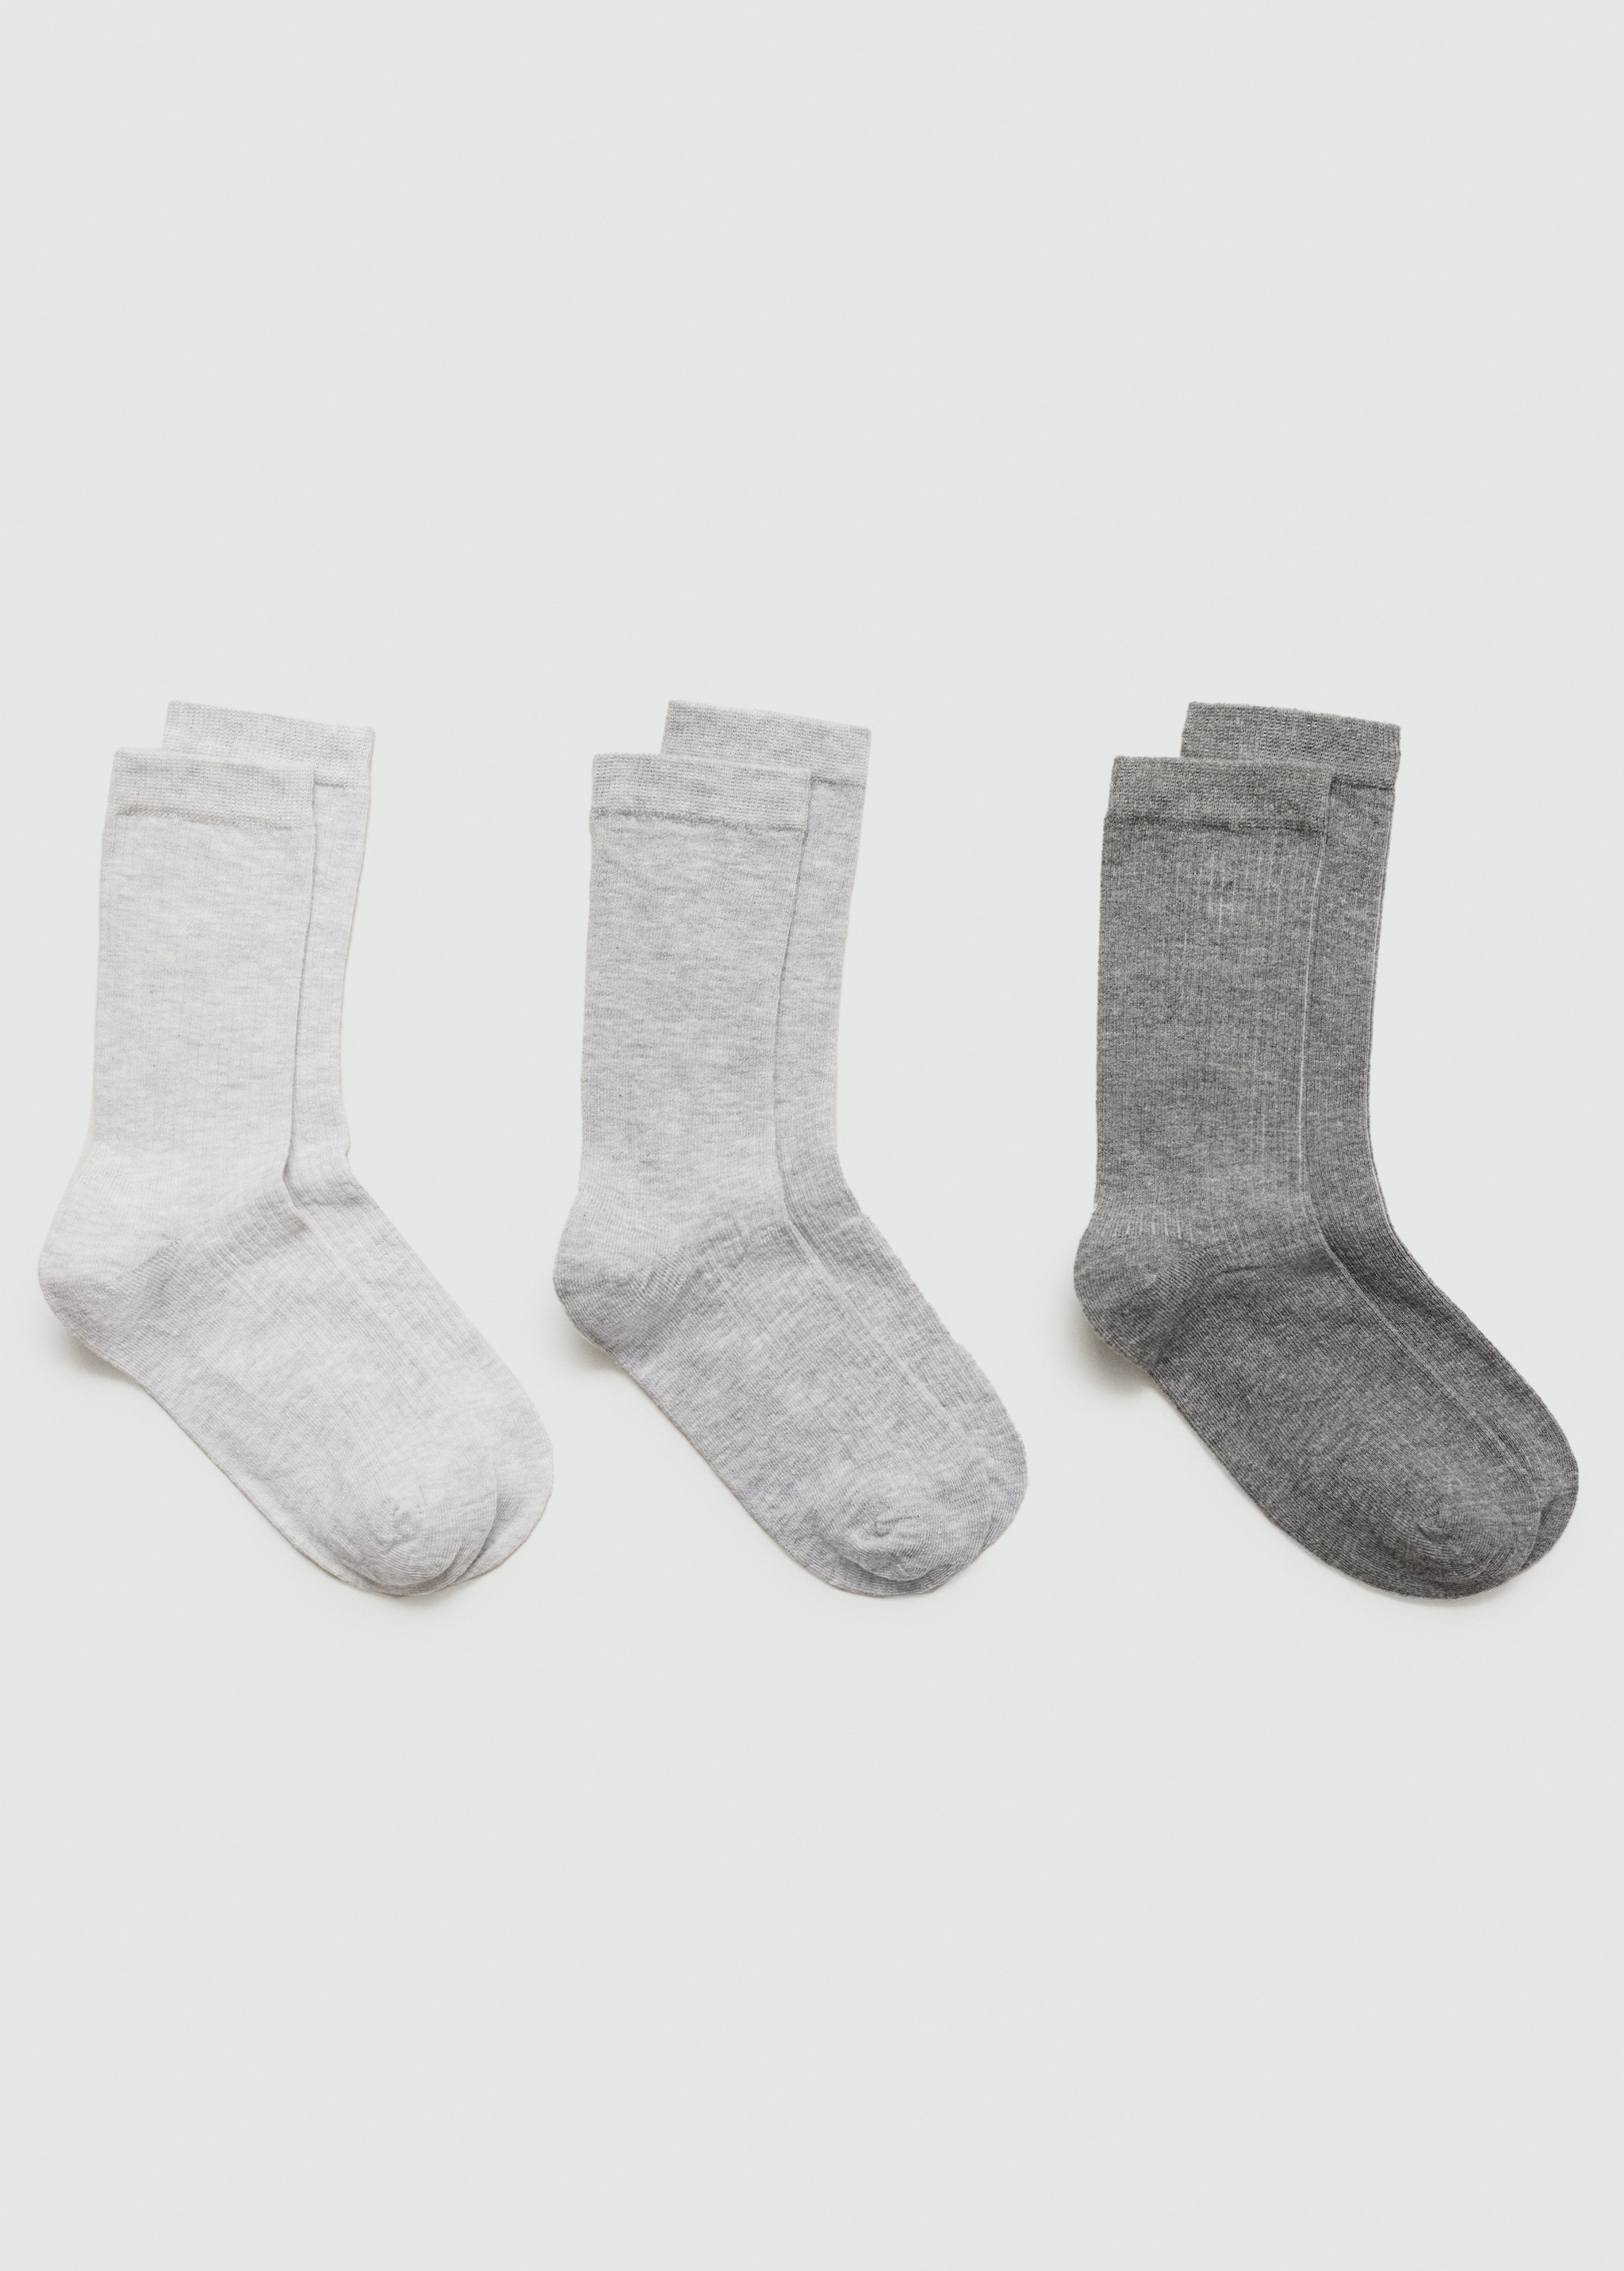 Pamuklu çizgi dokuma 3’lü çorap paketi - Modelsiz ürün